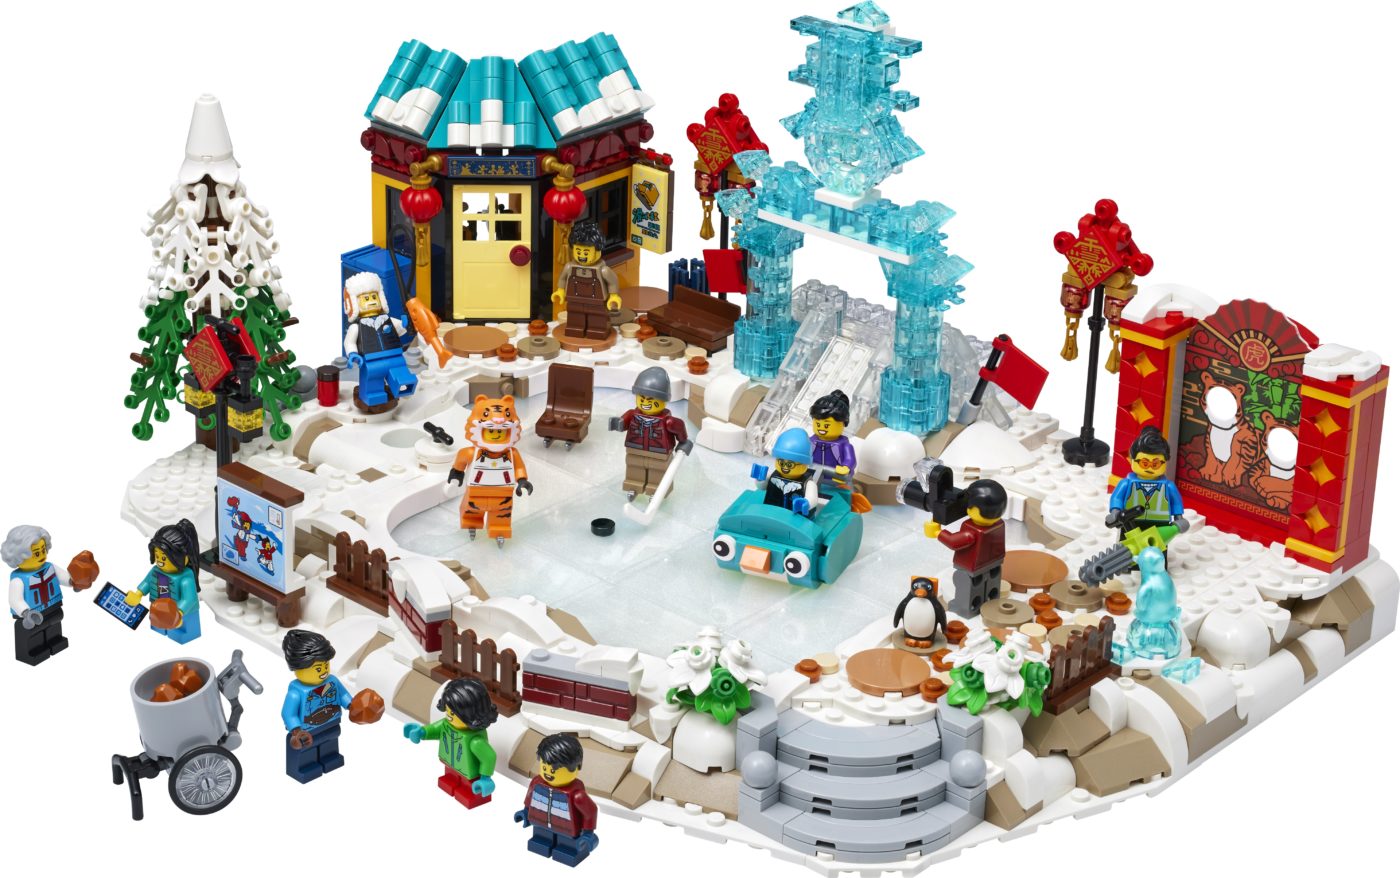 LEGO 80109 Lunar New Year Ice Festival Product